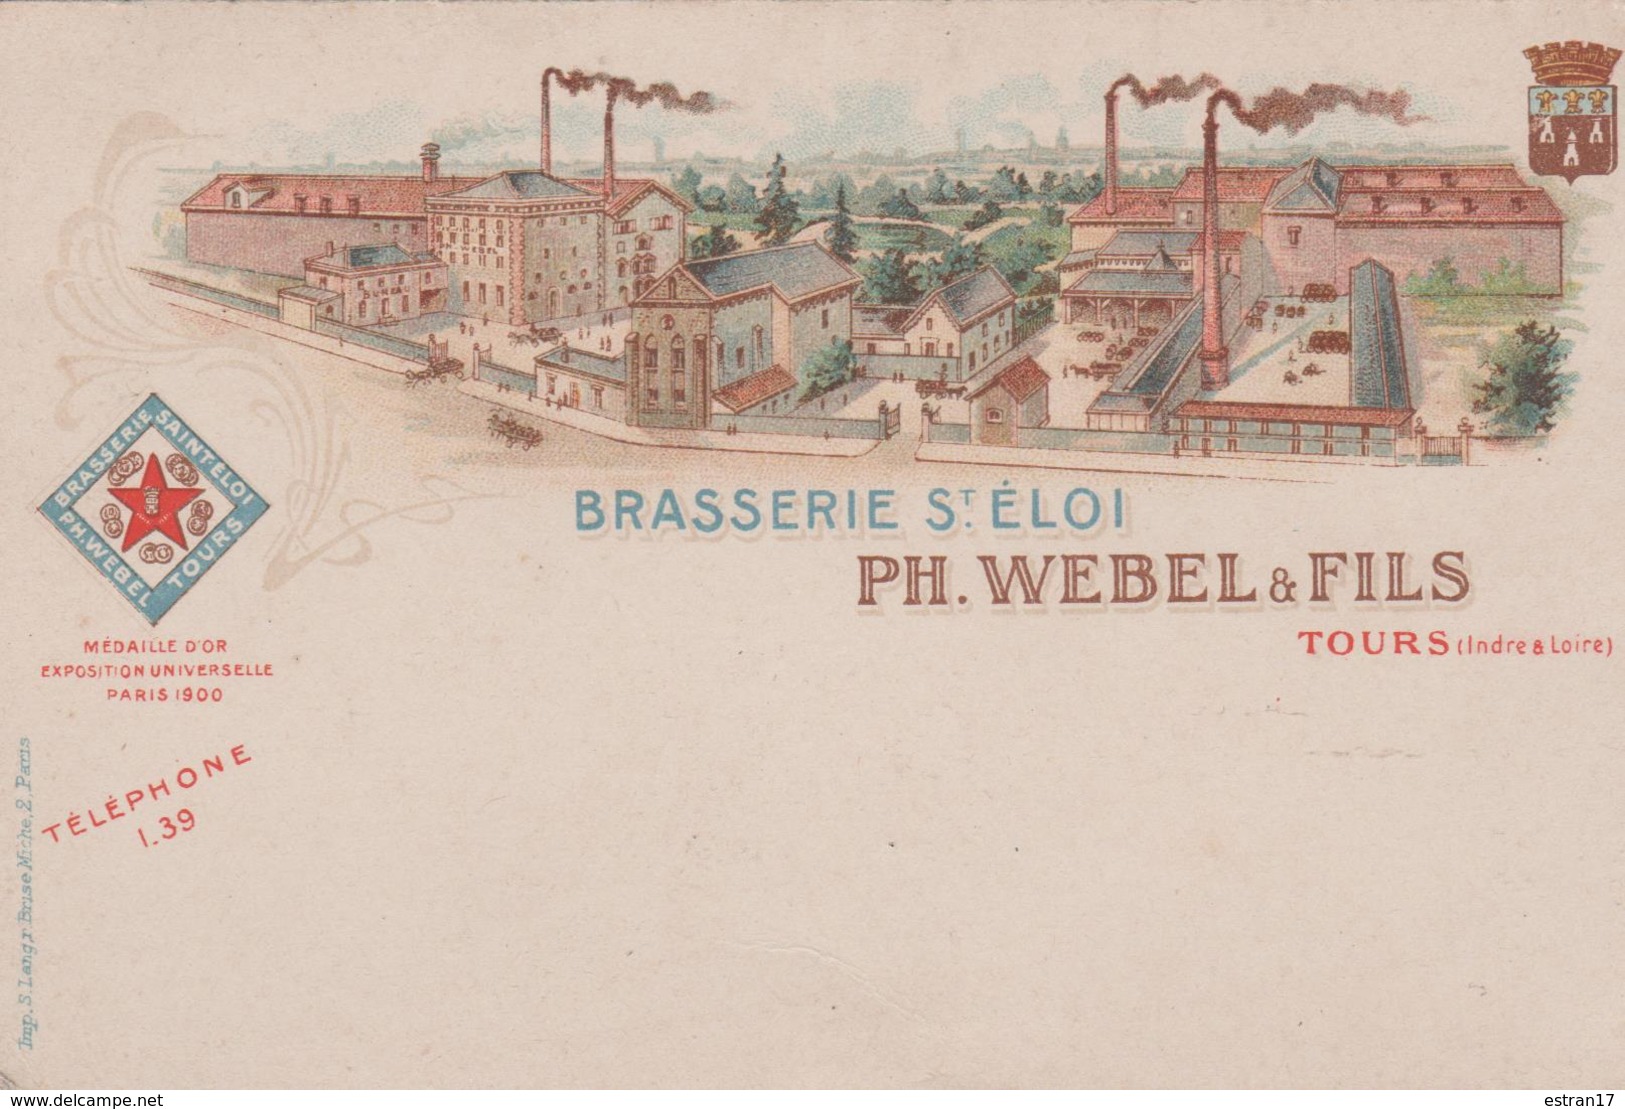 BRASSERIE SAINT-ELOI PH. WEBEL & FILS TOURS - Publicité